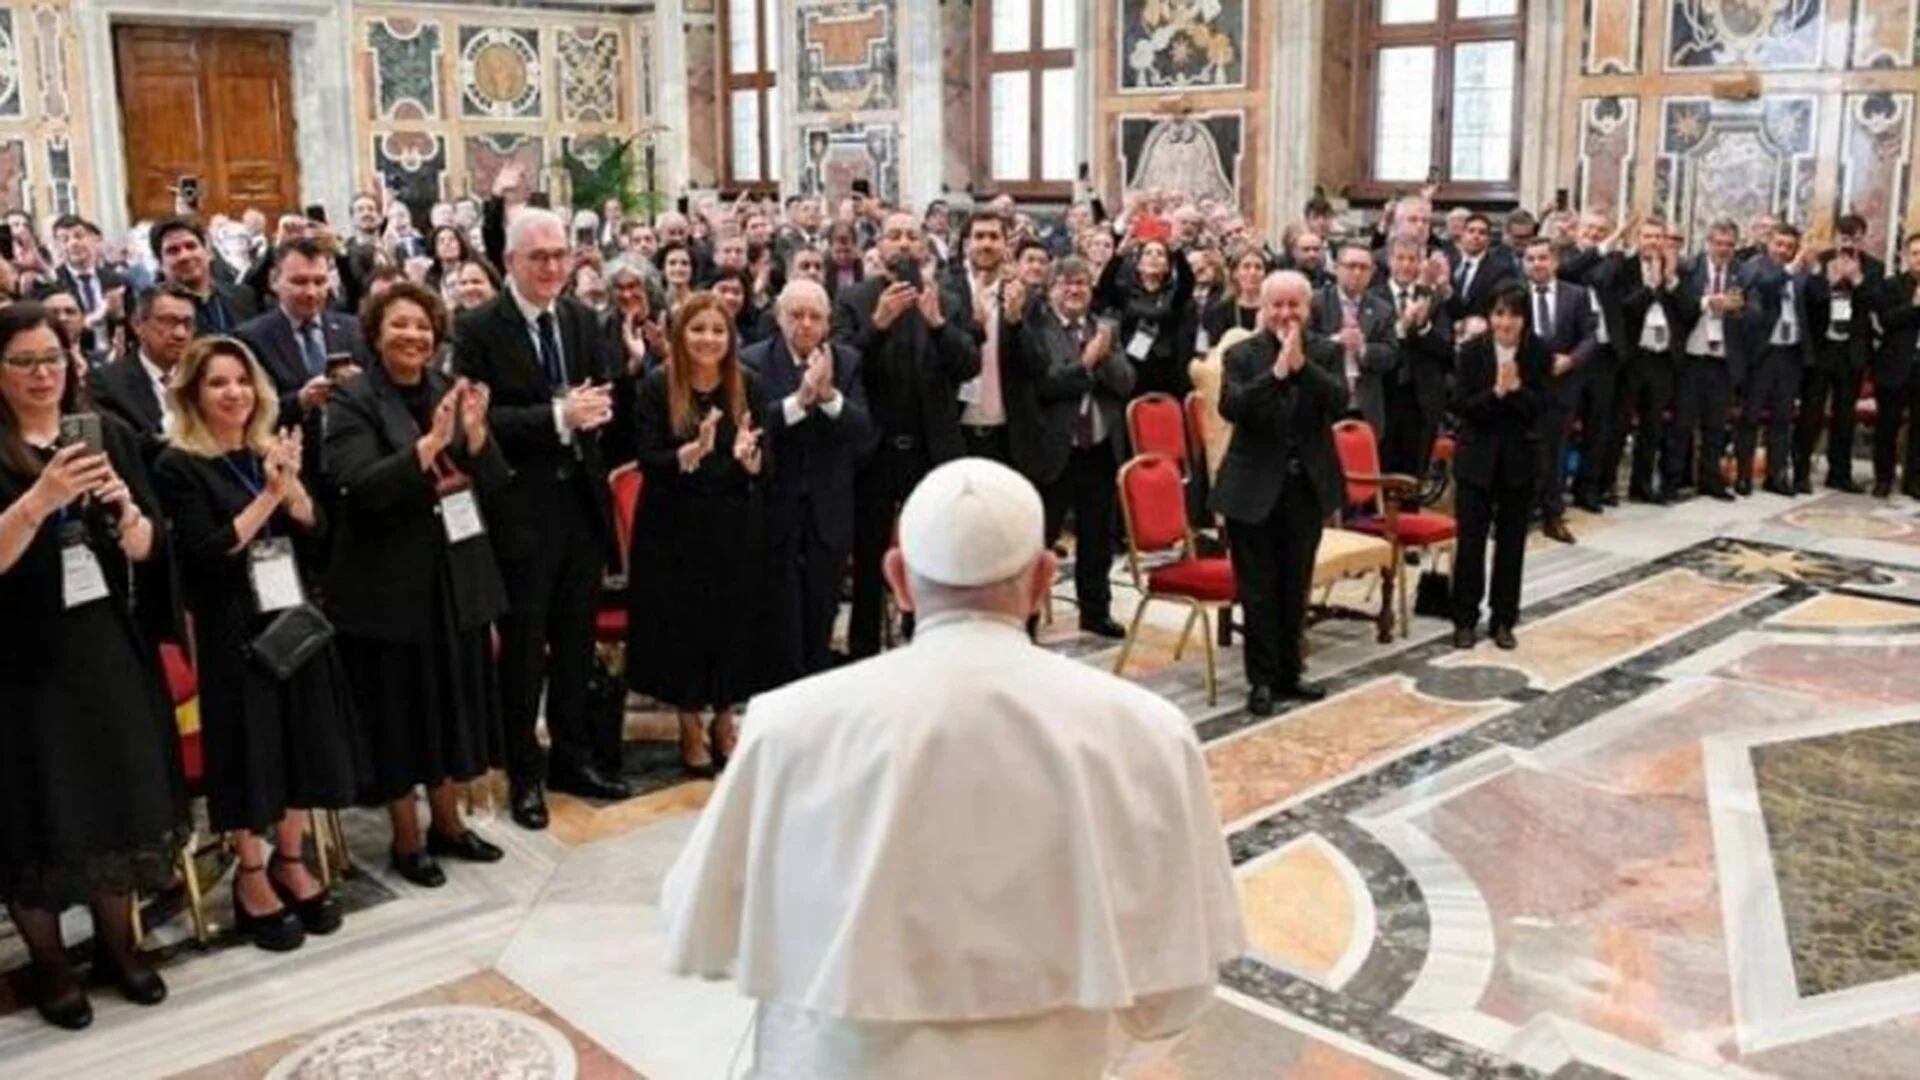 El Papa Francisco recibió a más de 200 rectores de universidades de América Latina y el Caribe en el Vaticano